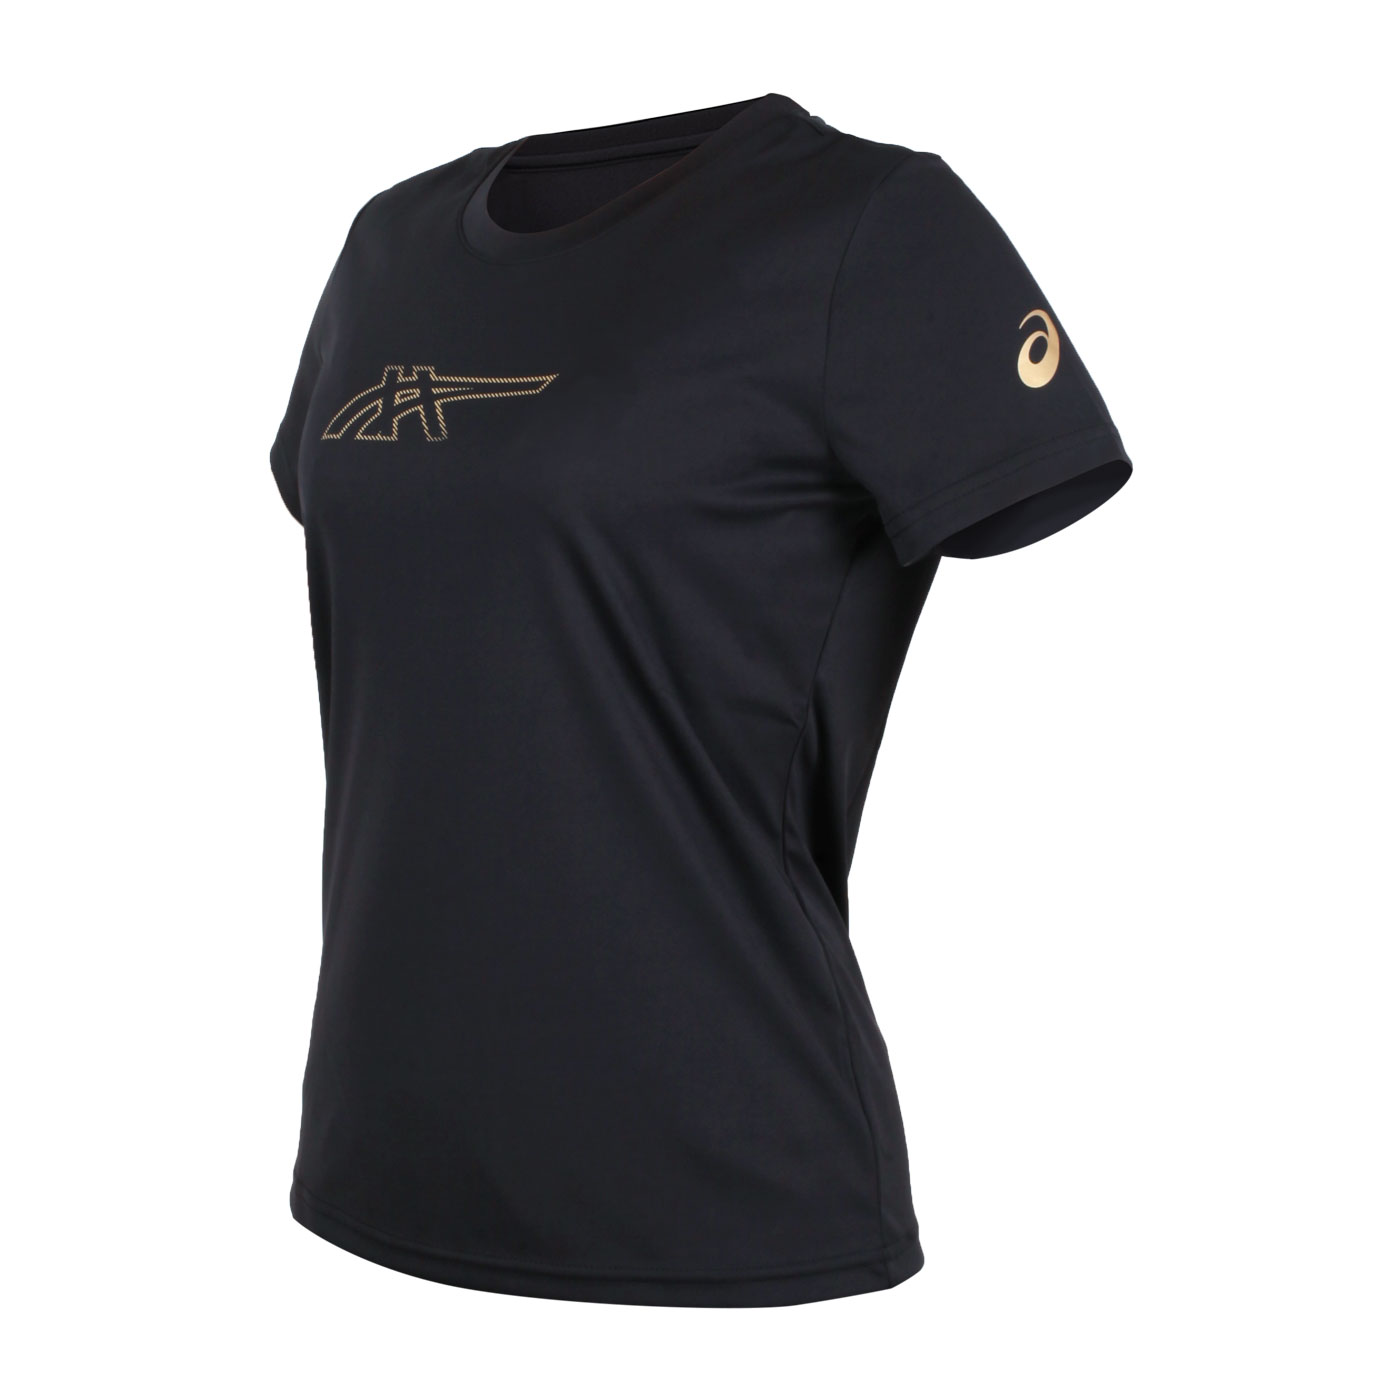 ASICS 女款短袖T恤 2032C800-001 - 黑金